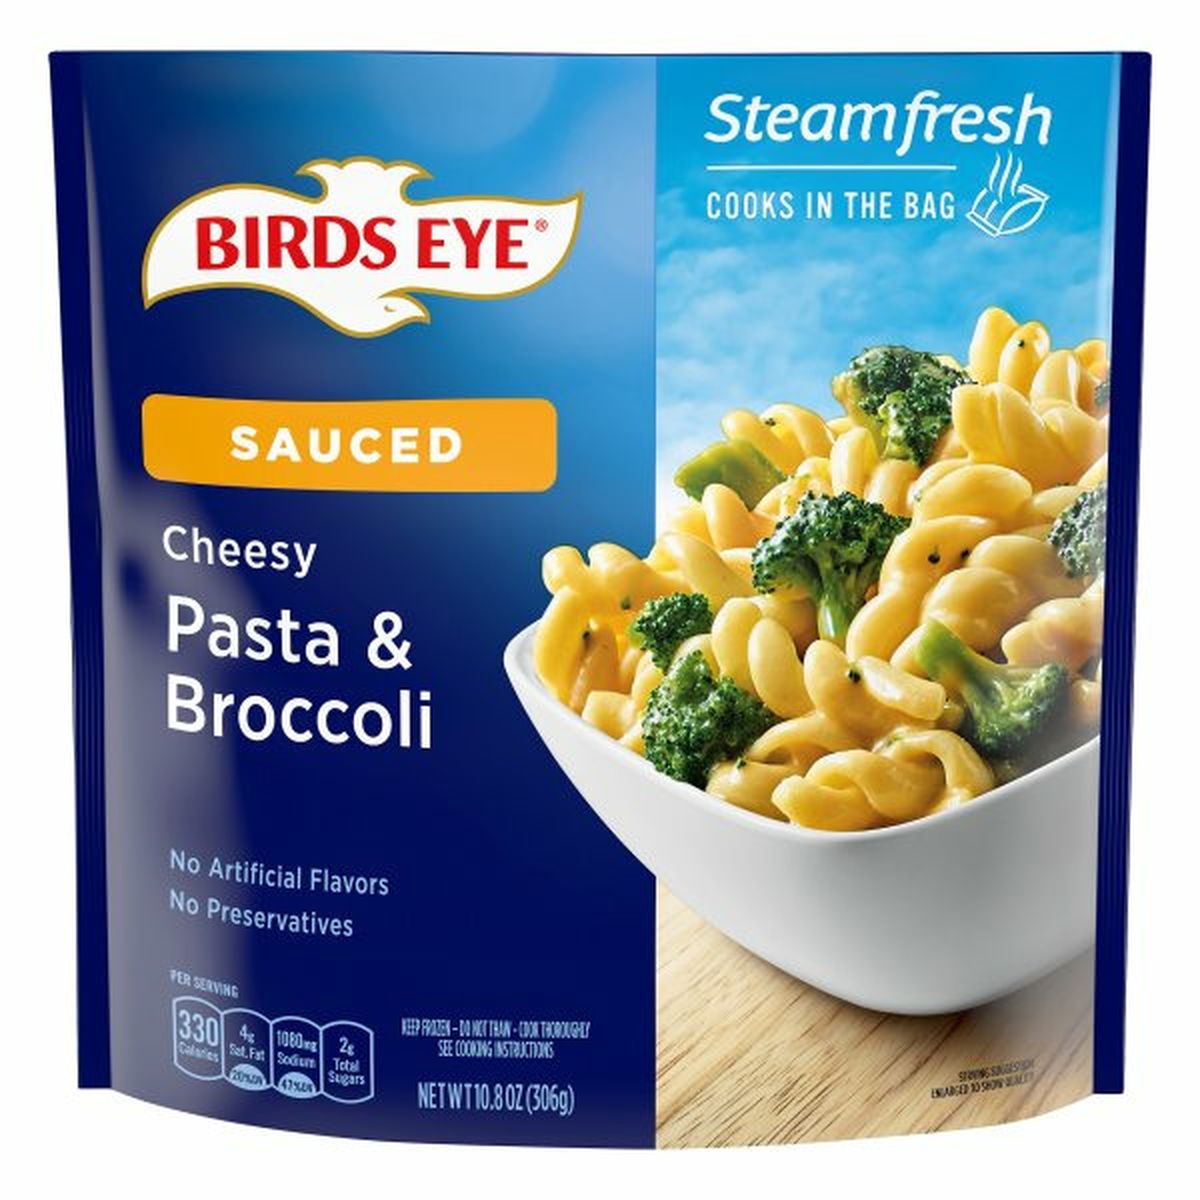 Calories in Birds Eye Steamfresh Pasta & Broccoli, Cheesy, Sauced